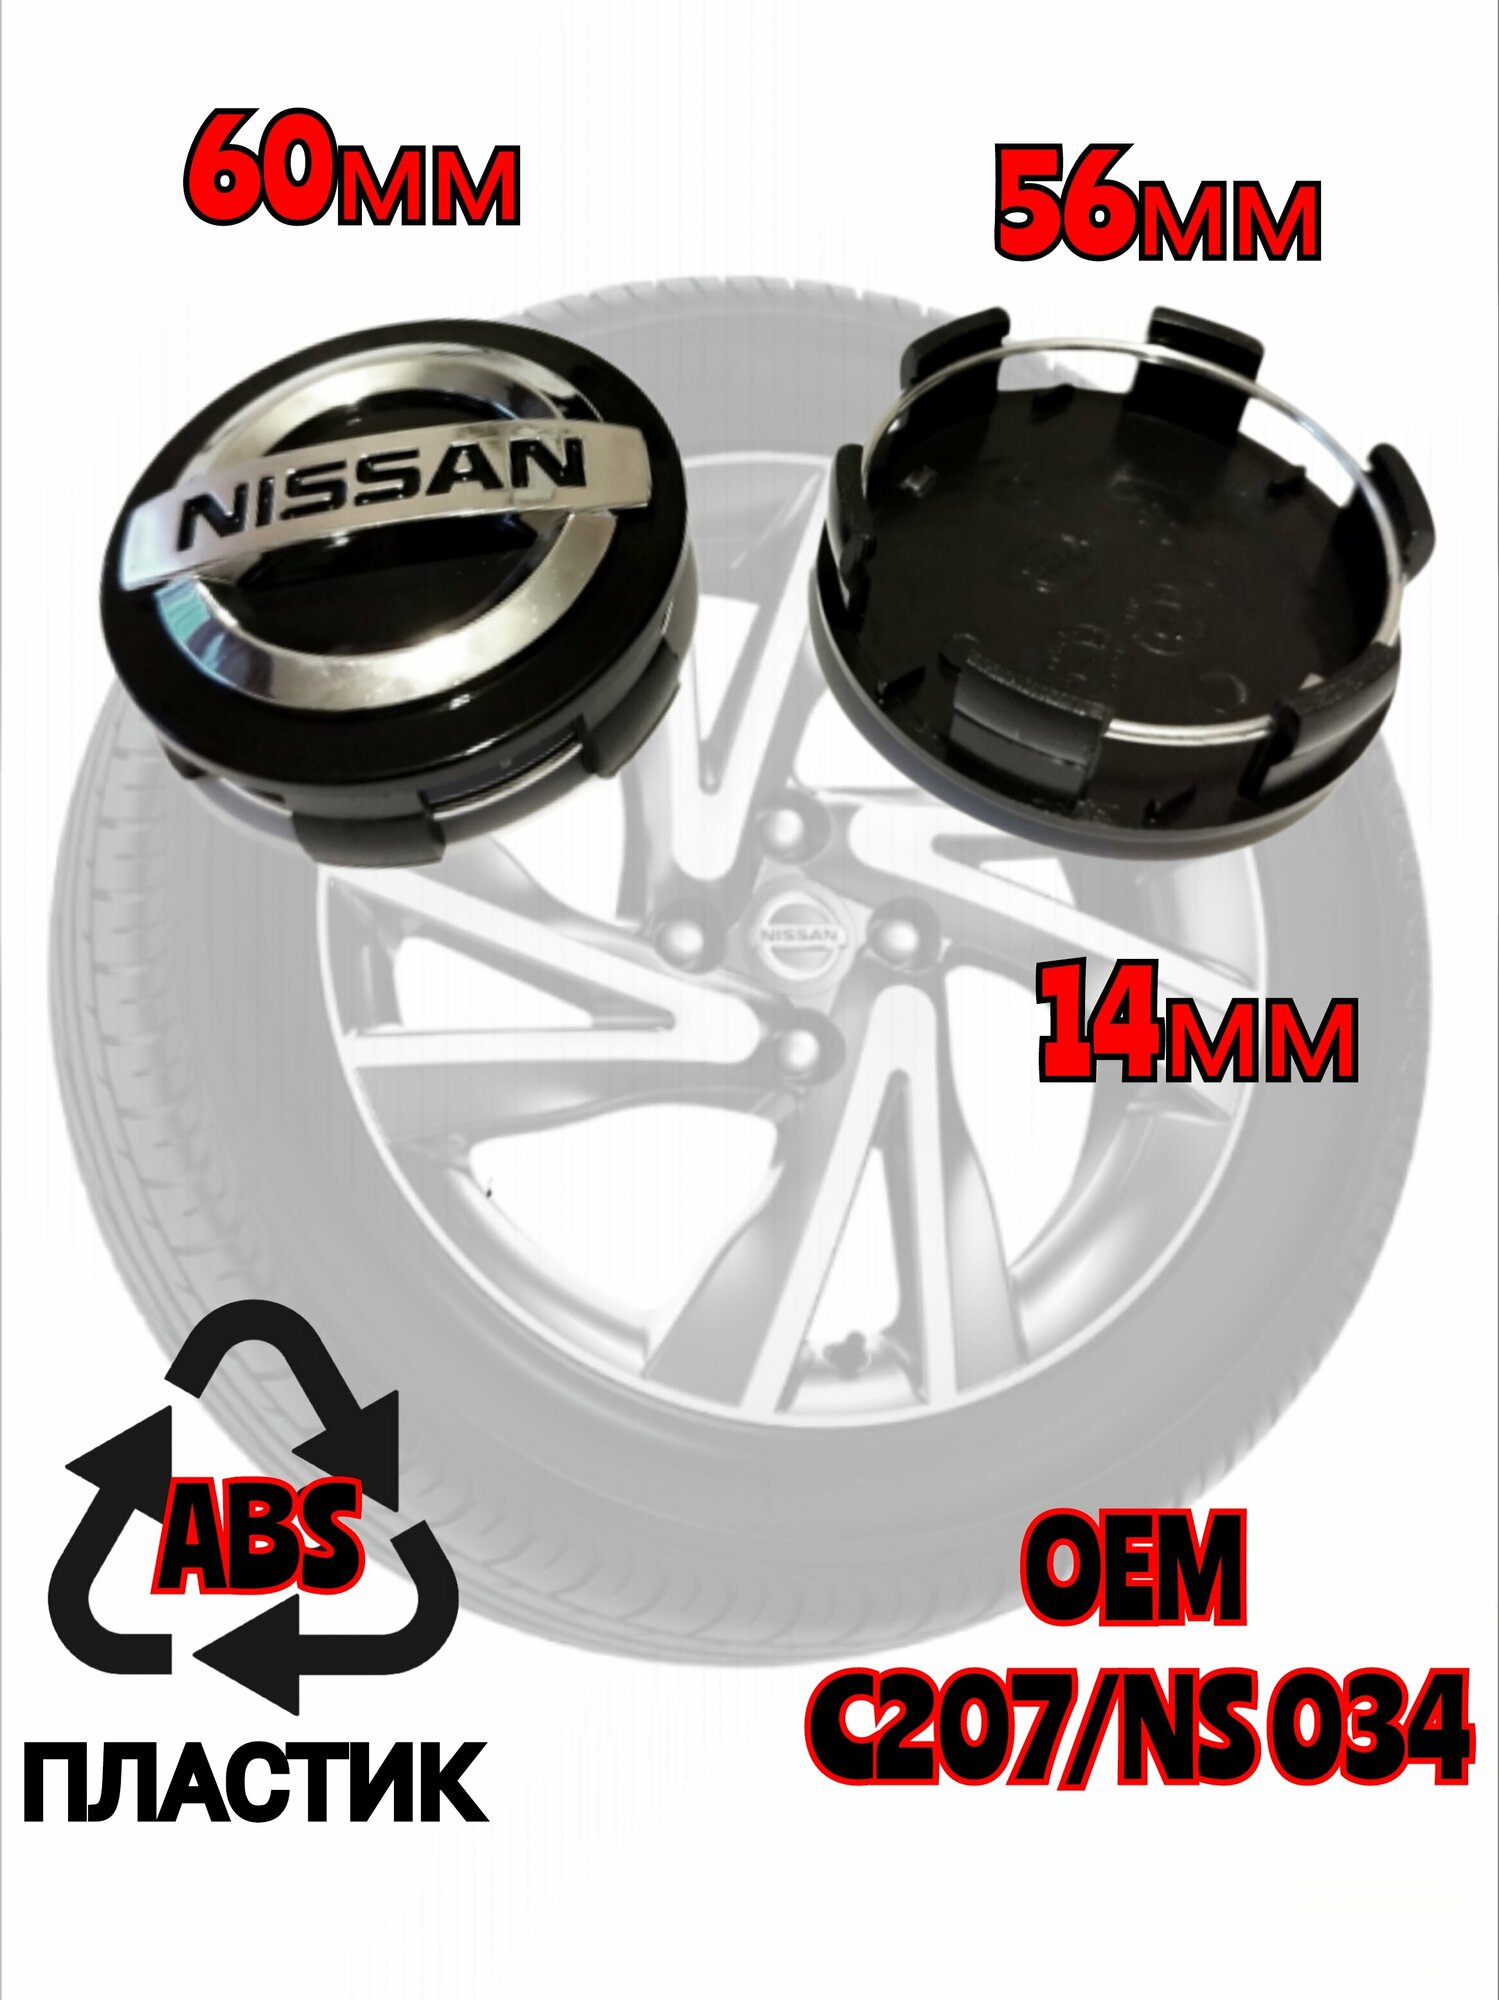 Заглушка диска/Колпачок ступицы литого диска Nissan Ниссан 60 -56 -14 мм цвет черный